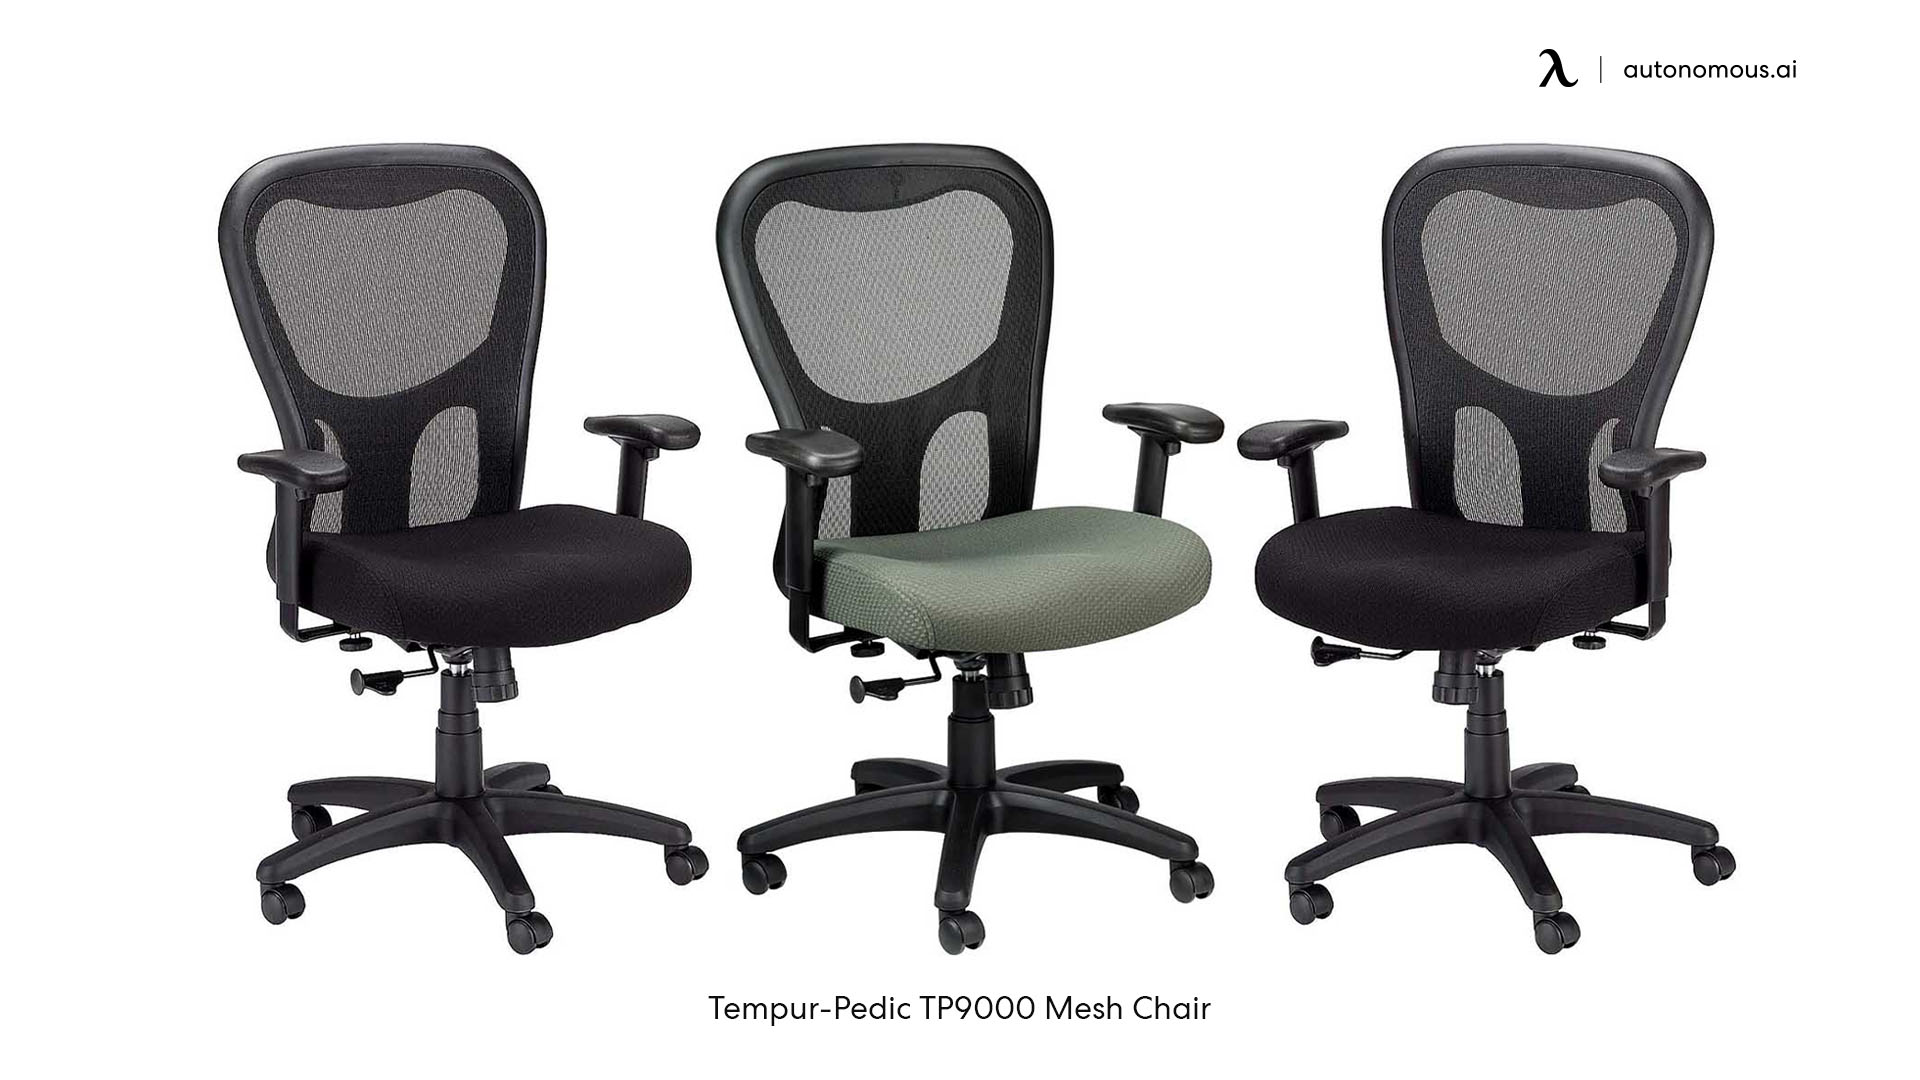 Tempur-Pedic TP9000 Mesh Task Chair